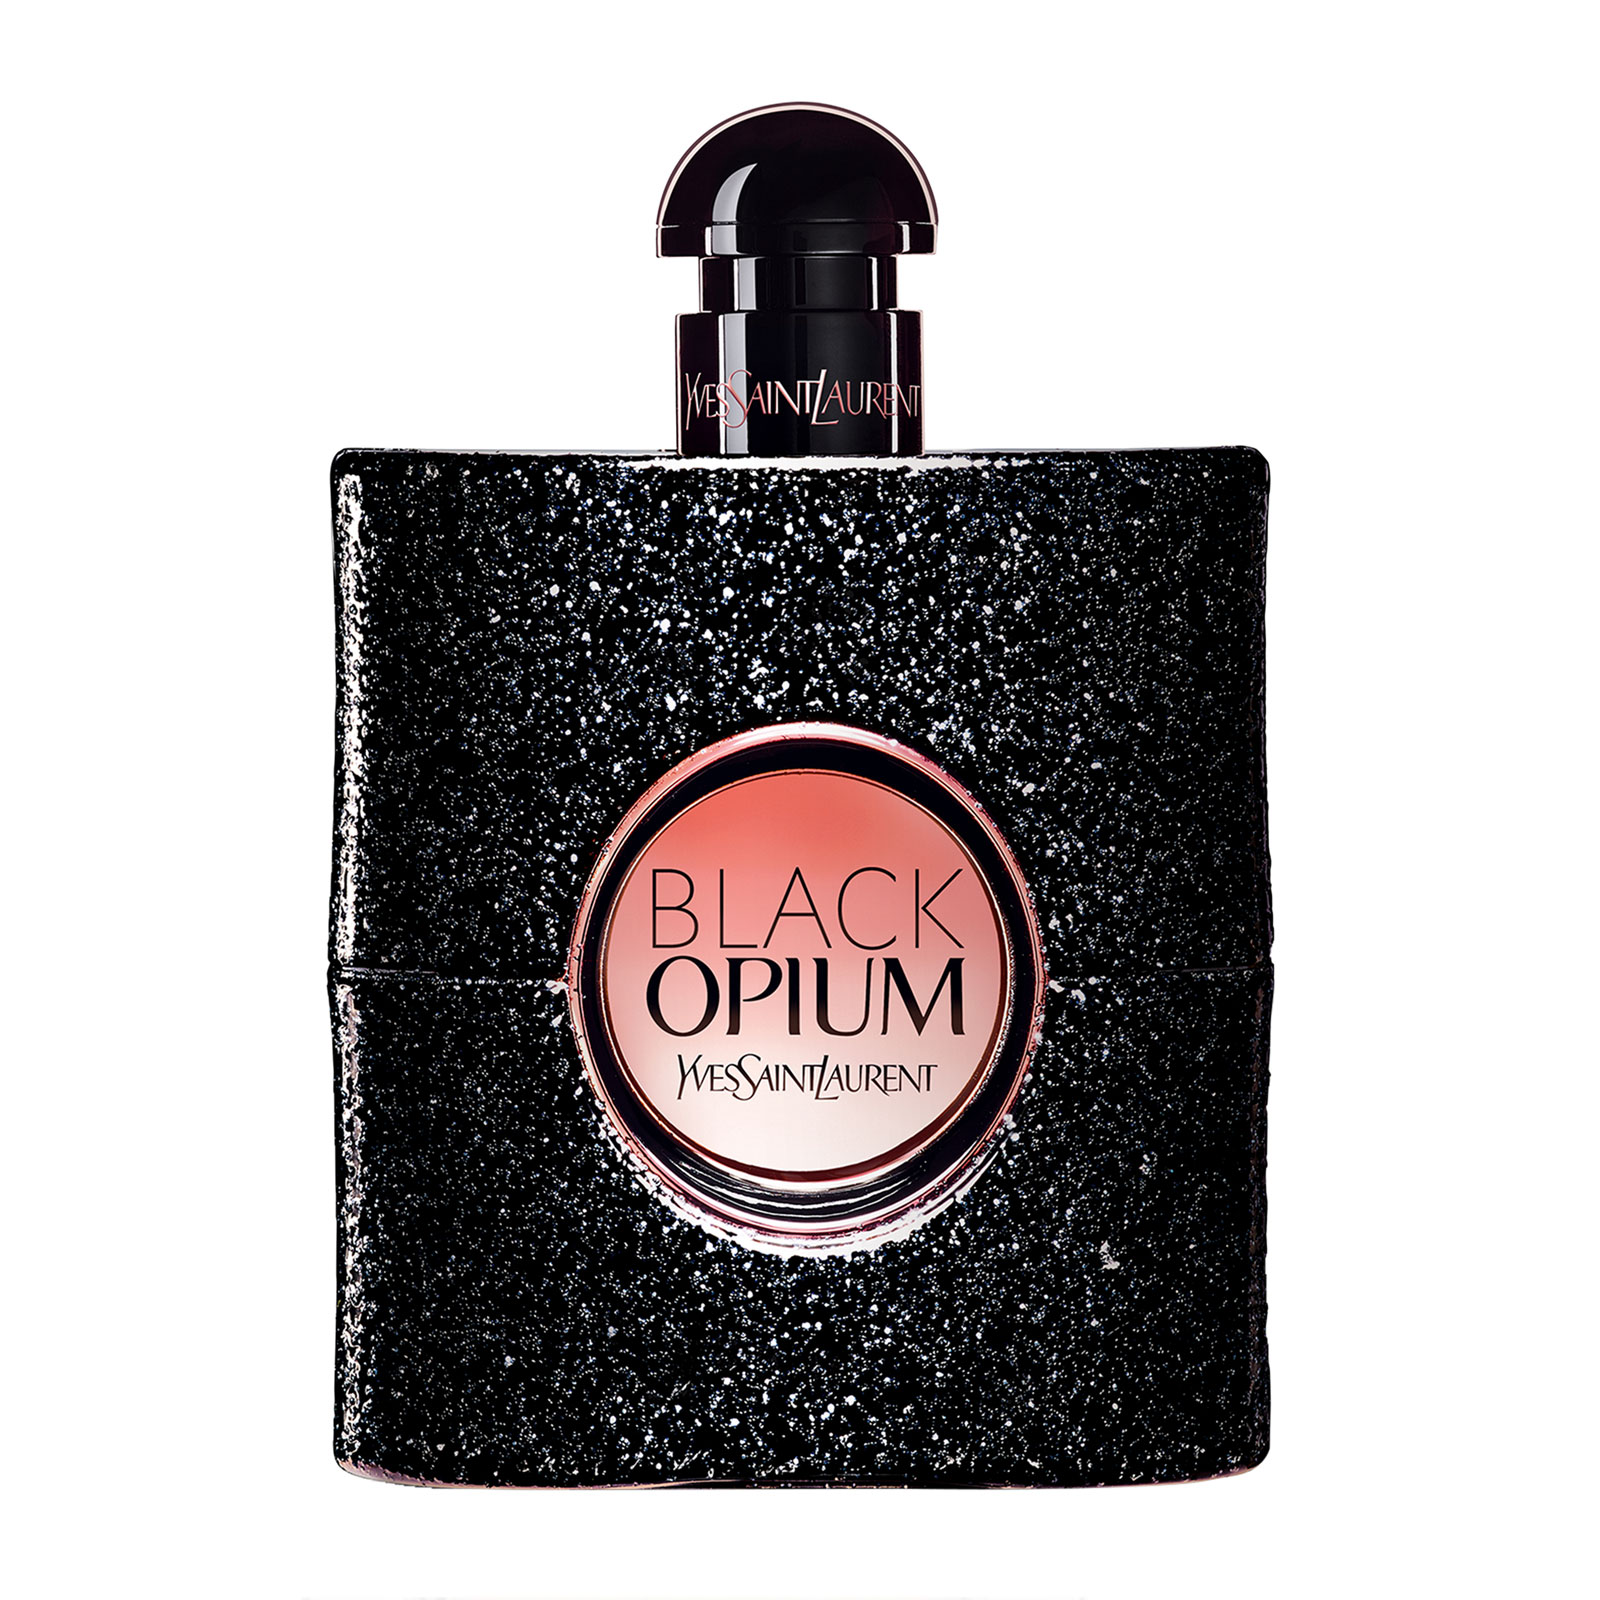 Ysl Beauty Black Opium Eau De...